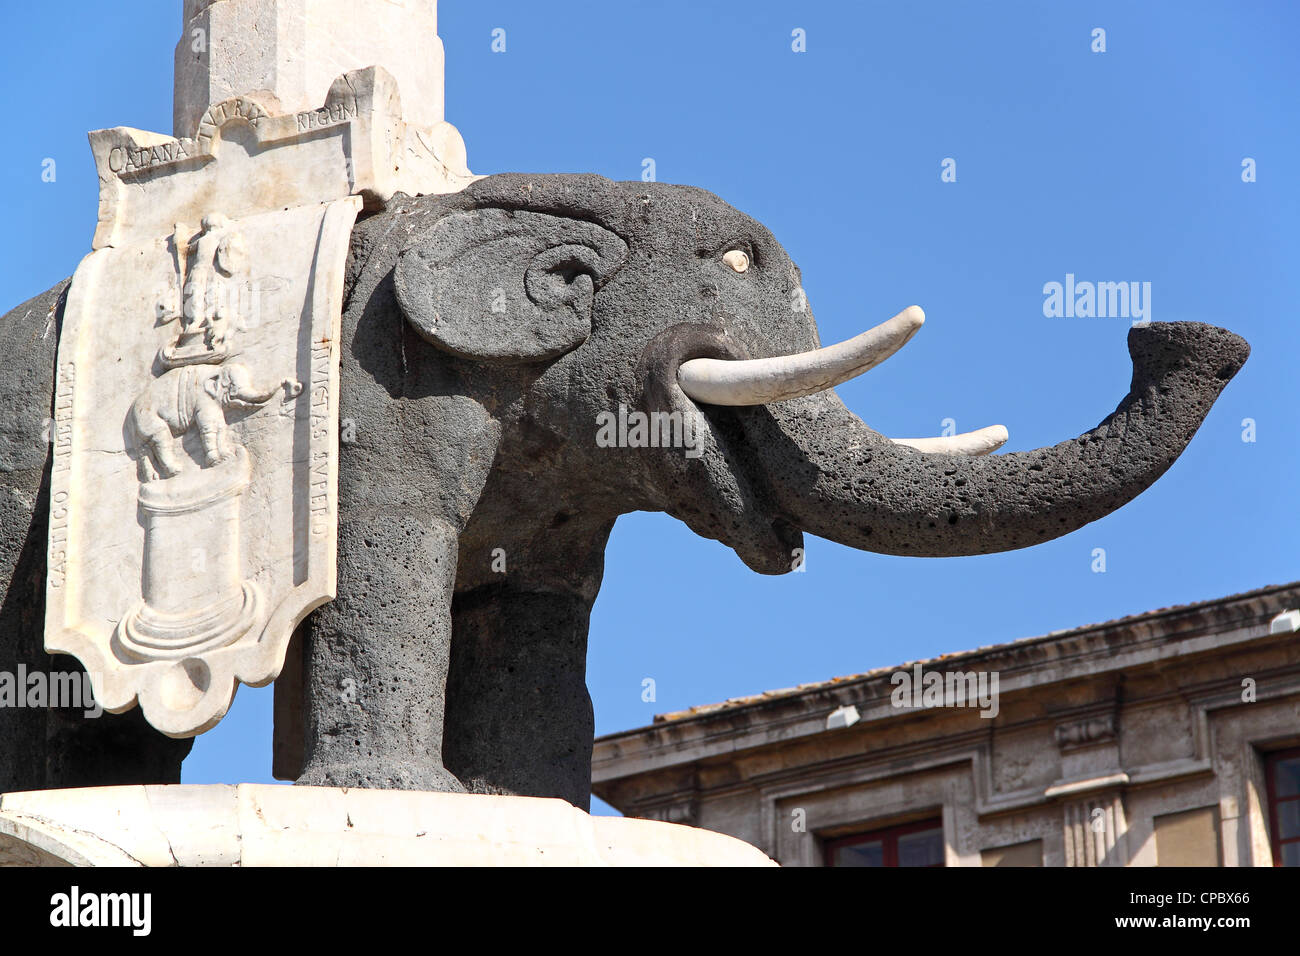 Statue de l'éléphant, construit en pierre de lave, symbole de Catane, Sicile, Italie Banque D'Images